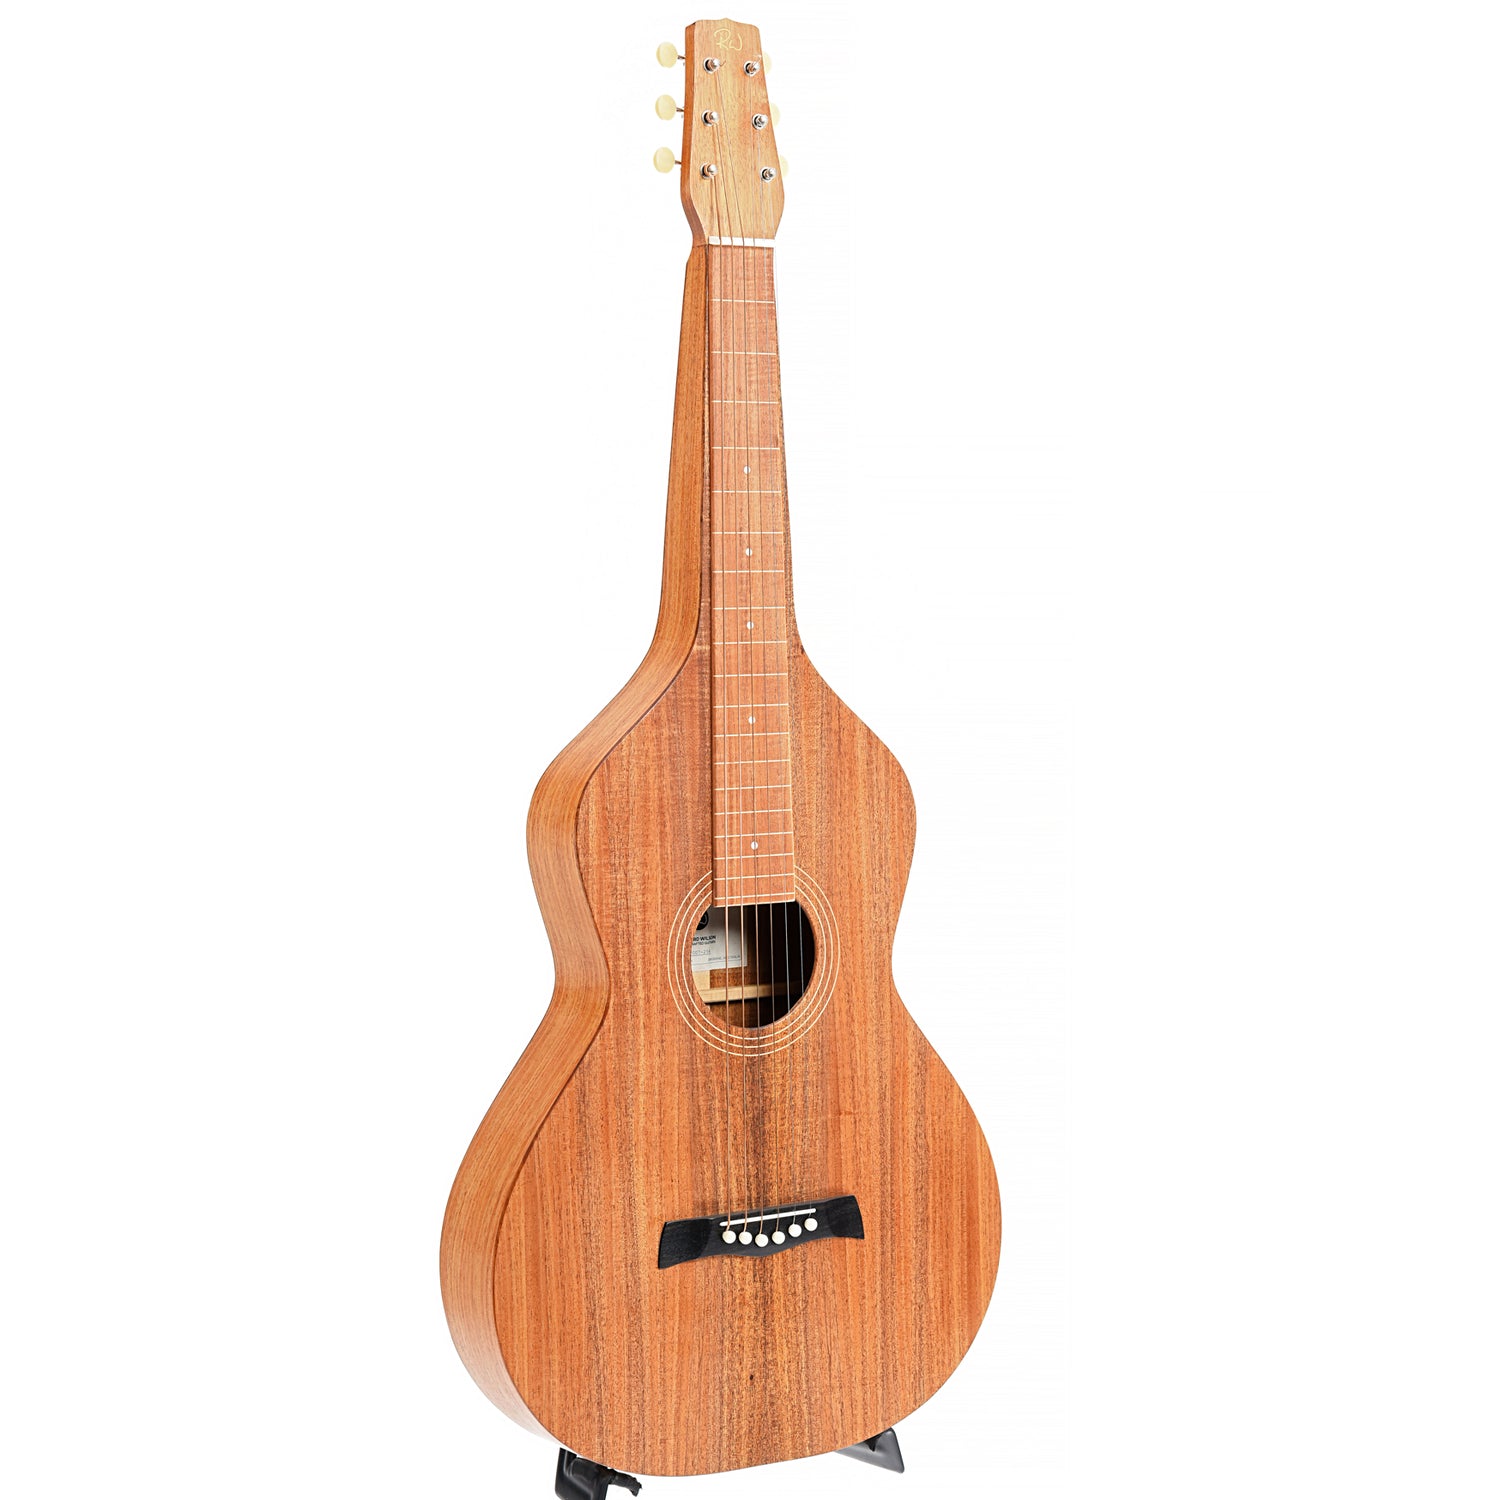 Richard 1 Weissenborn Hawaiian Guitar (2020)